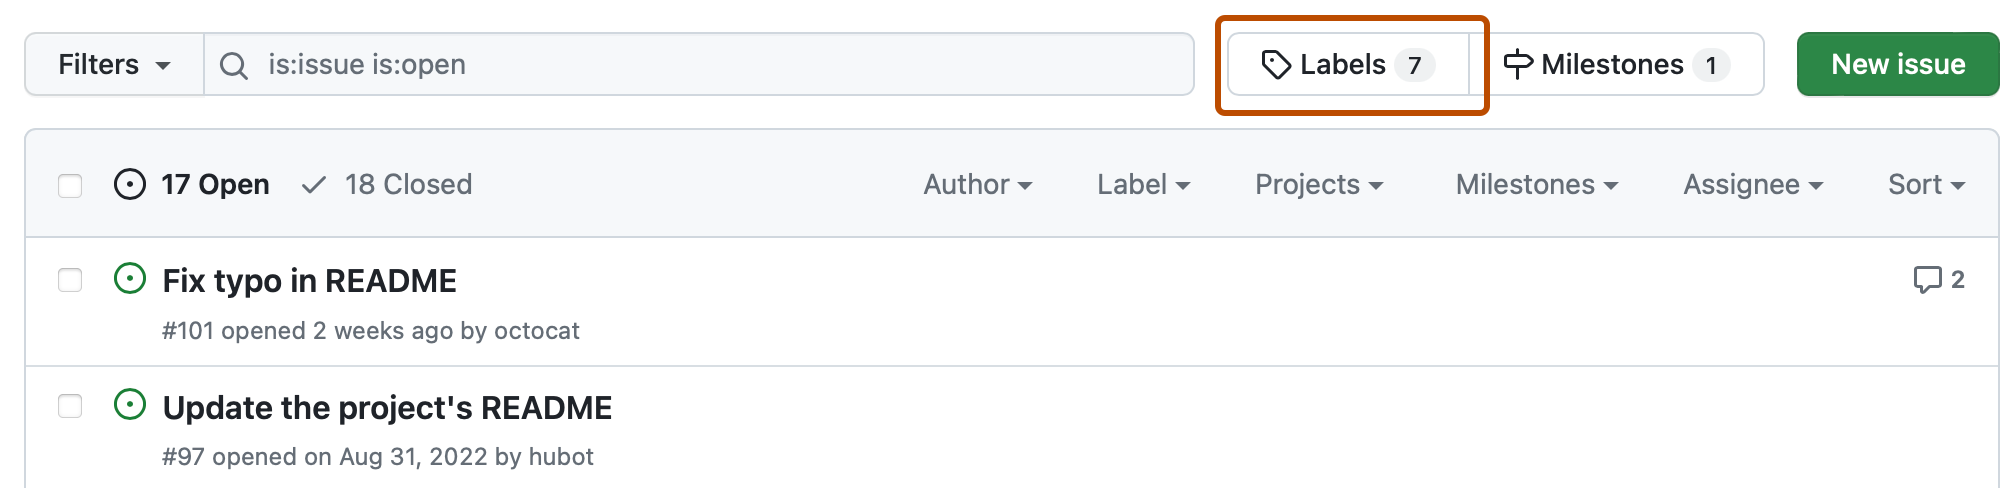 Captura de tela da lista de problemas de um repositório. Acima da lista, há um botão com um ícone de rótulo "Rótulos" e o contorno em laranja escuro.